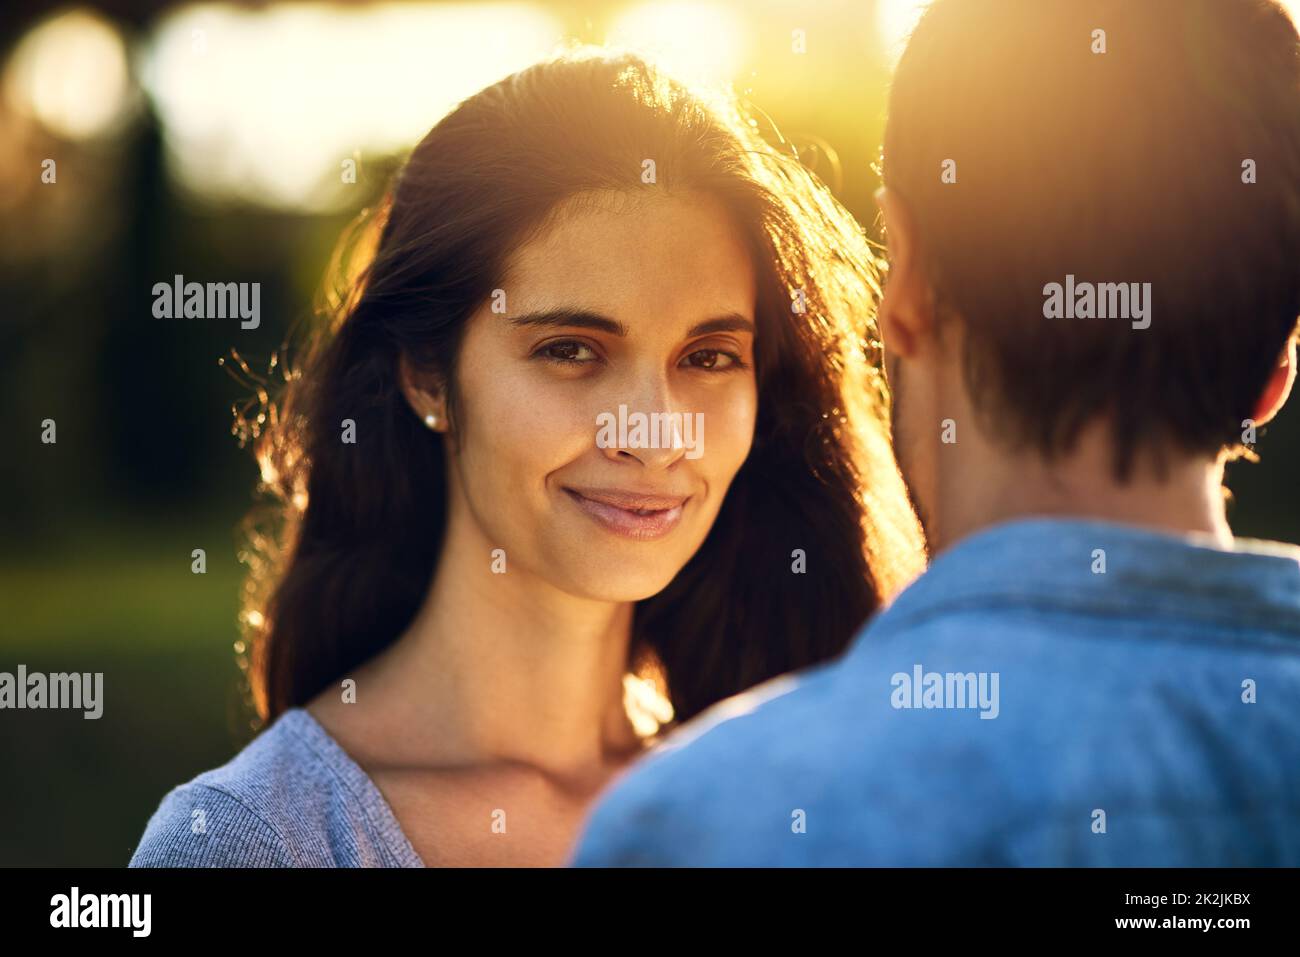 Er ist wirklich die Liebe meines Lebens. Porträt einer jungen Frau, die sich im Freien mit ihrem Freund verbunden hat. Stockfoto